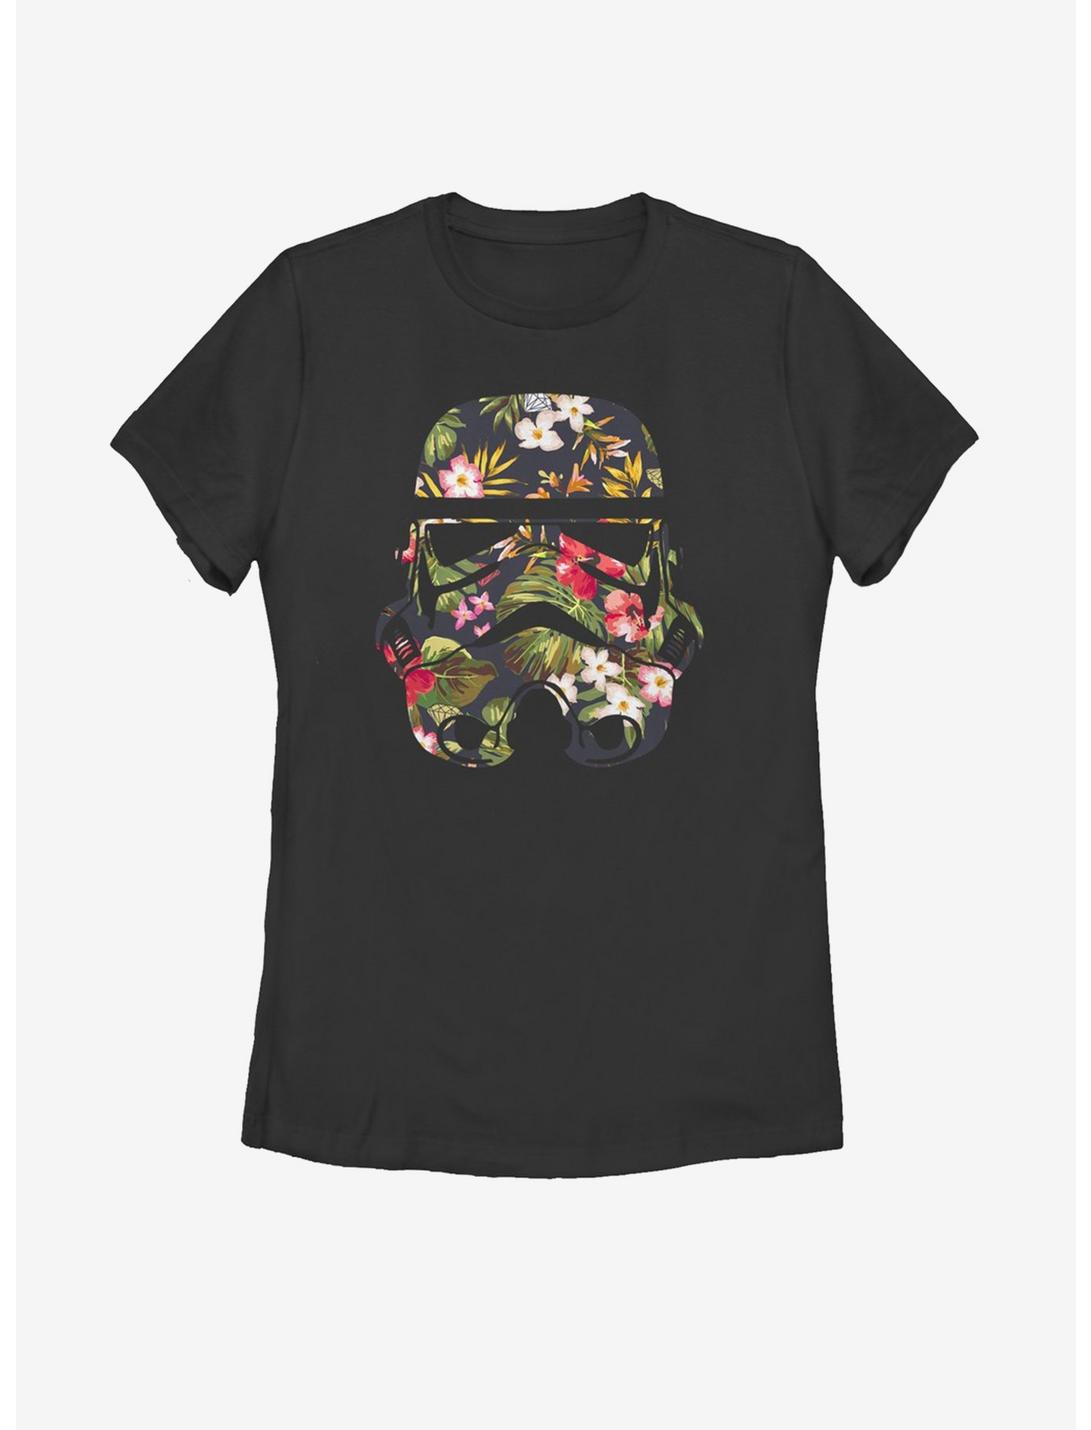 Star Wars Tropical Stormtrooper Womens T-Shirt, BLACK, hi-res